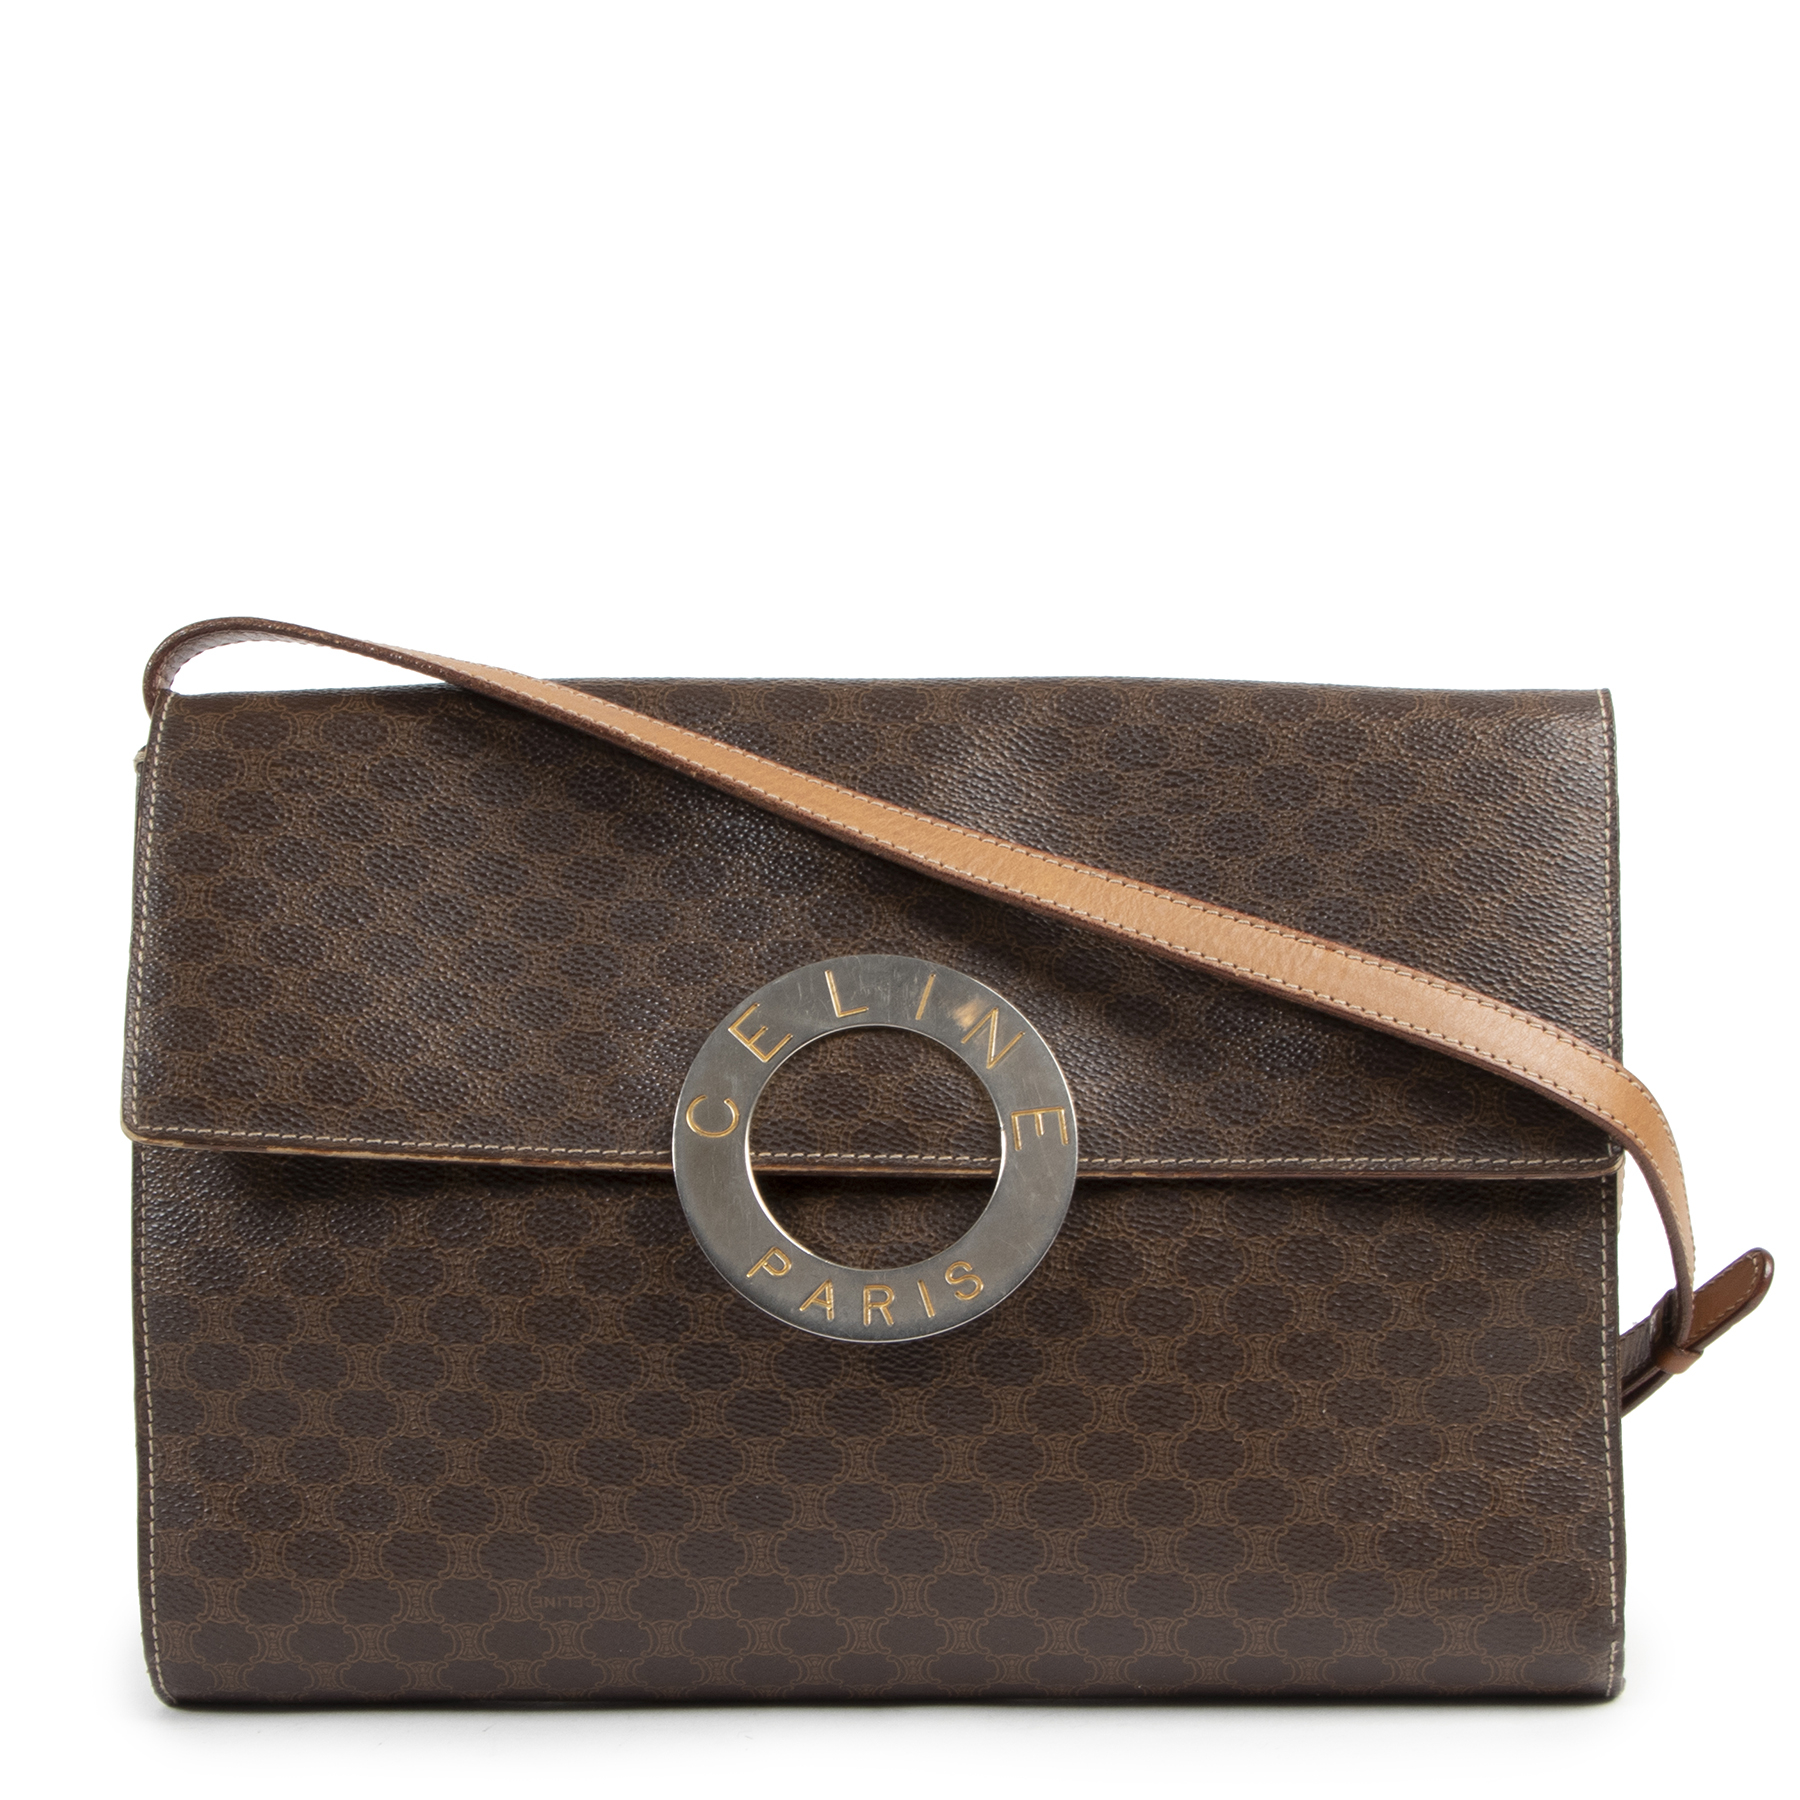 Vintage Celine Black Leather Box Bag – The Hosta